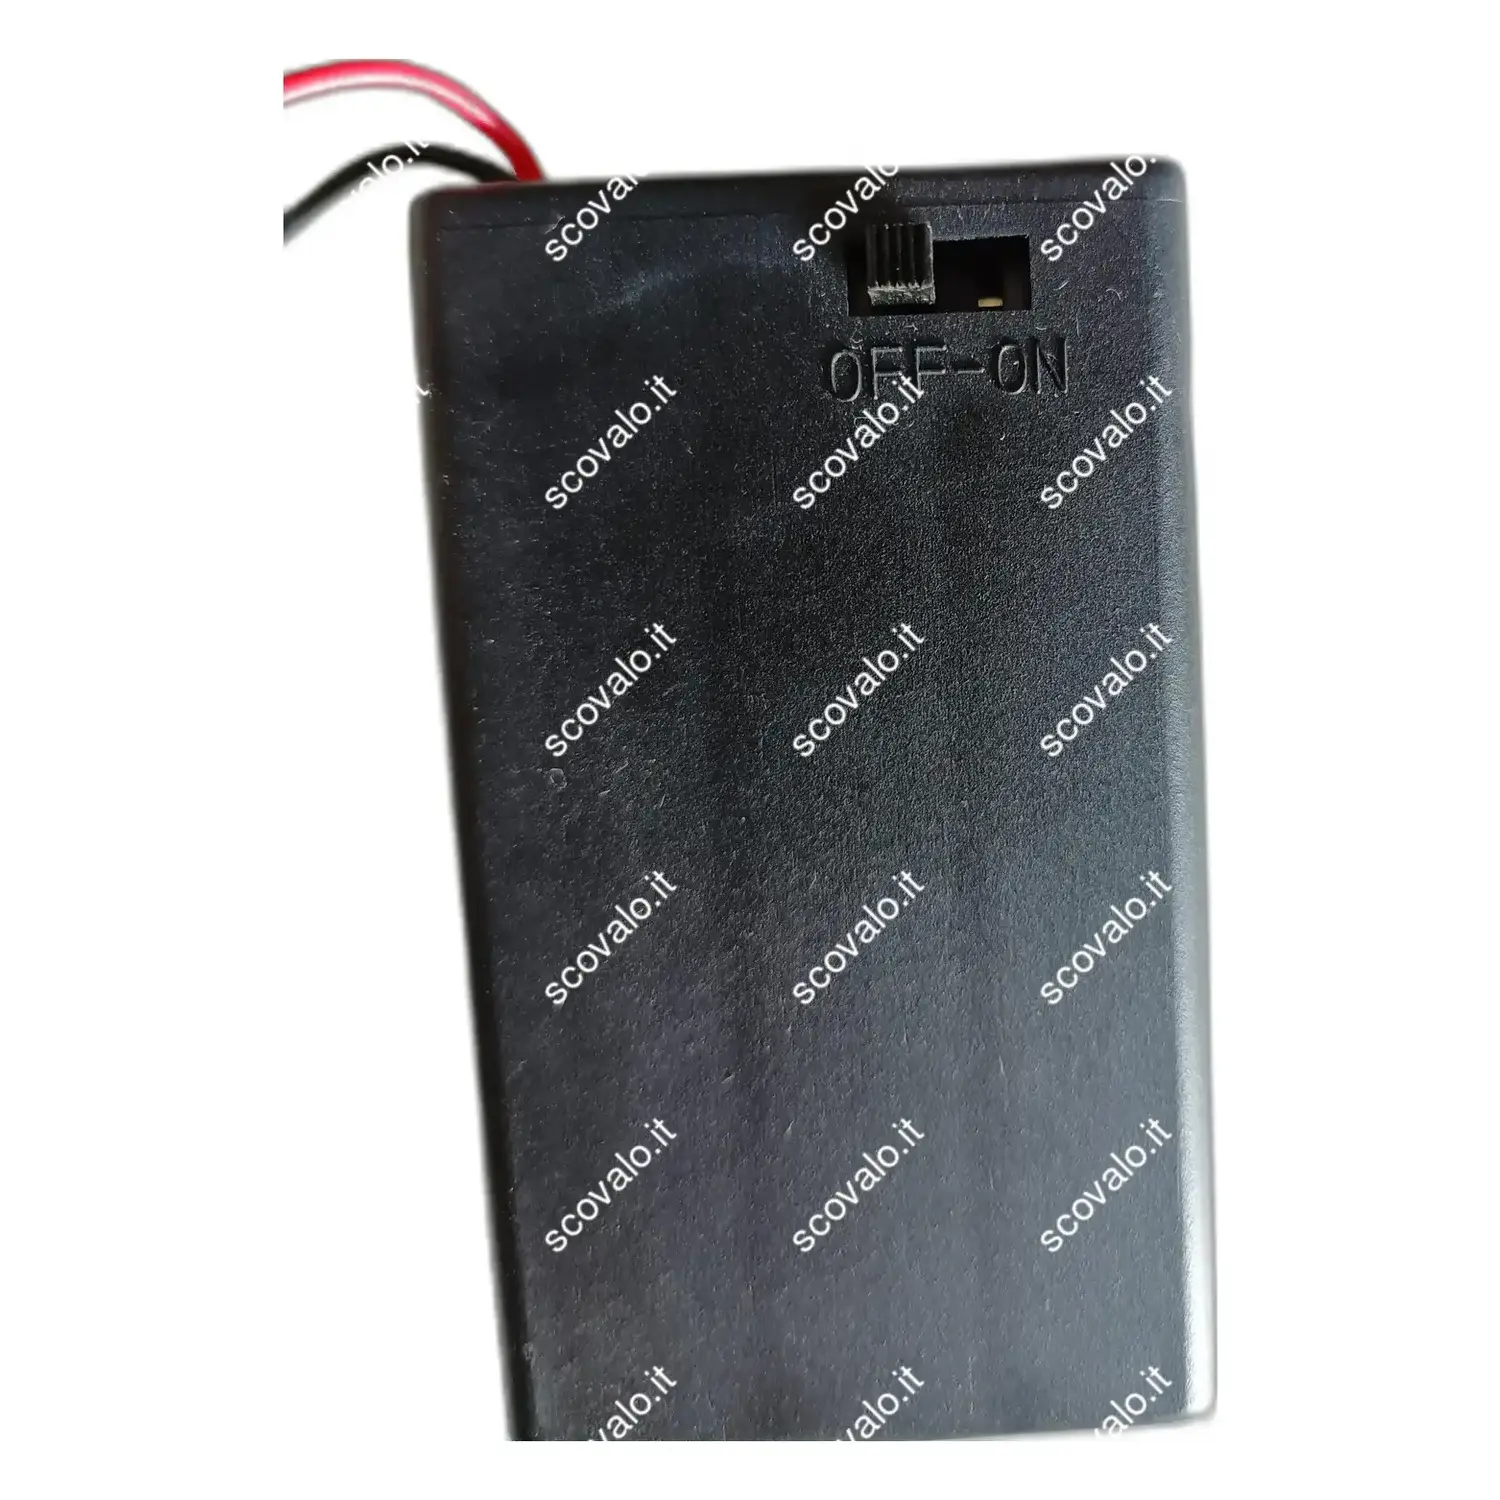 immagine portabatterie 3 x mini stilo aaa con interruttore contenitore box batteria